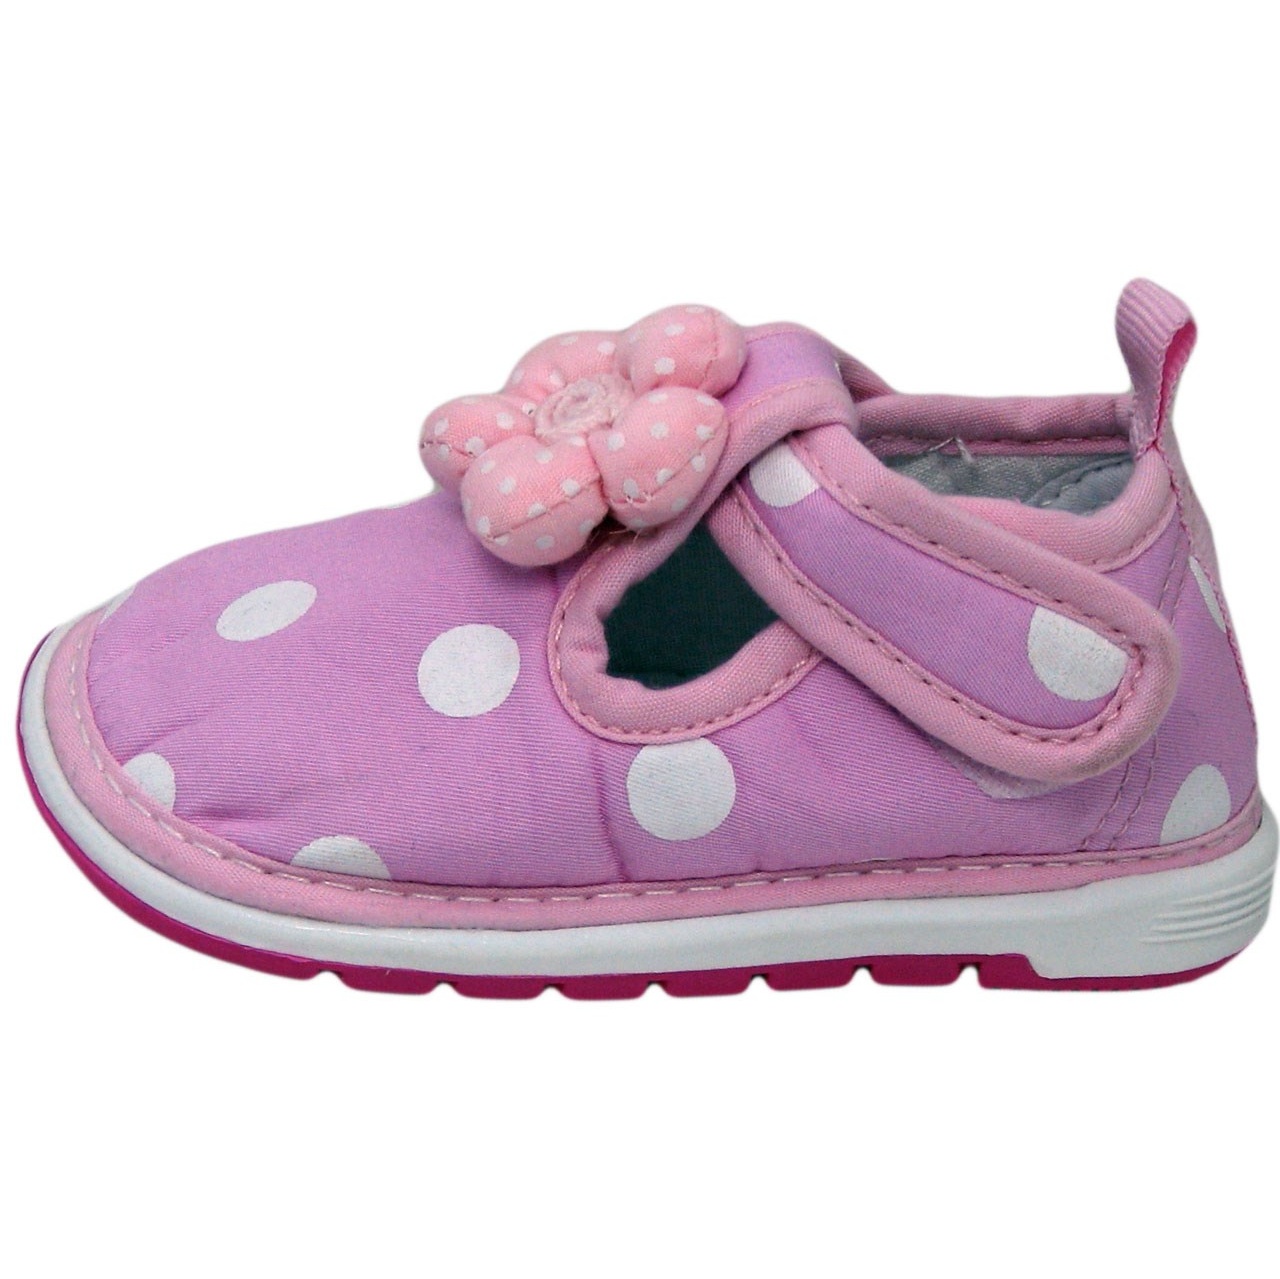 کفش بچه گانه طرح سوت سوتی مدل F-pink